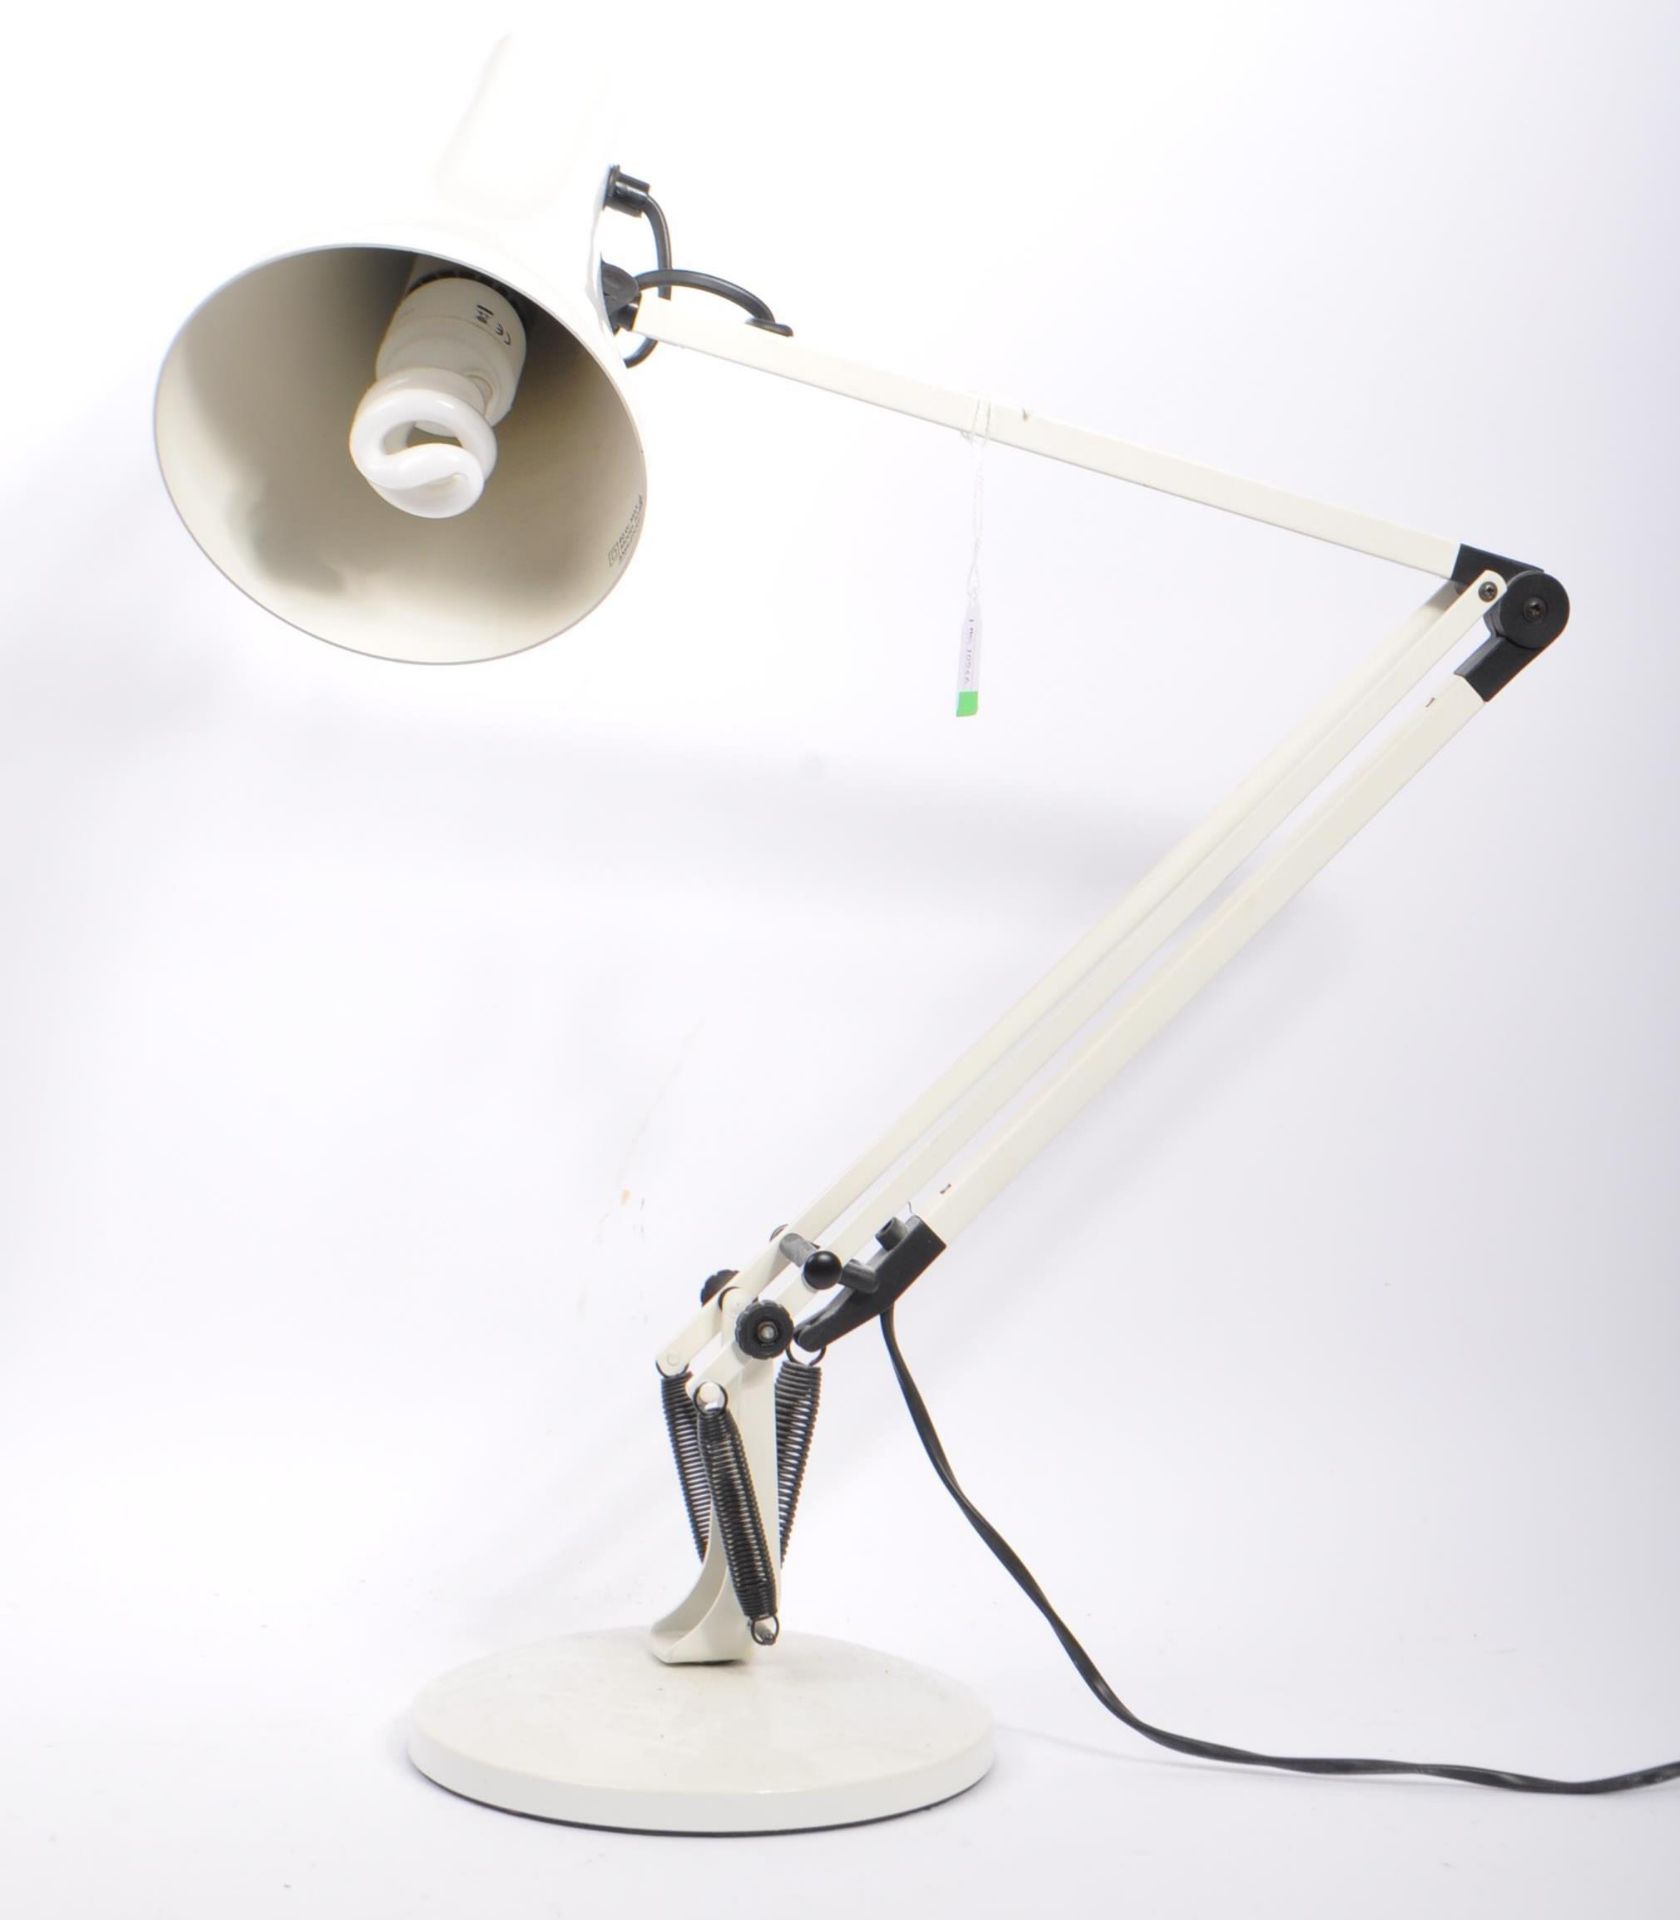 MID 20TH CENTURY RETRO INDUSTRIAL DESK LAMP